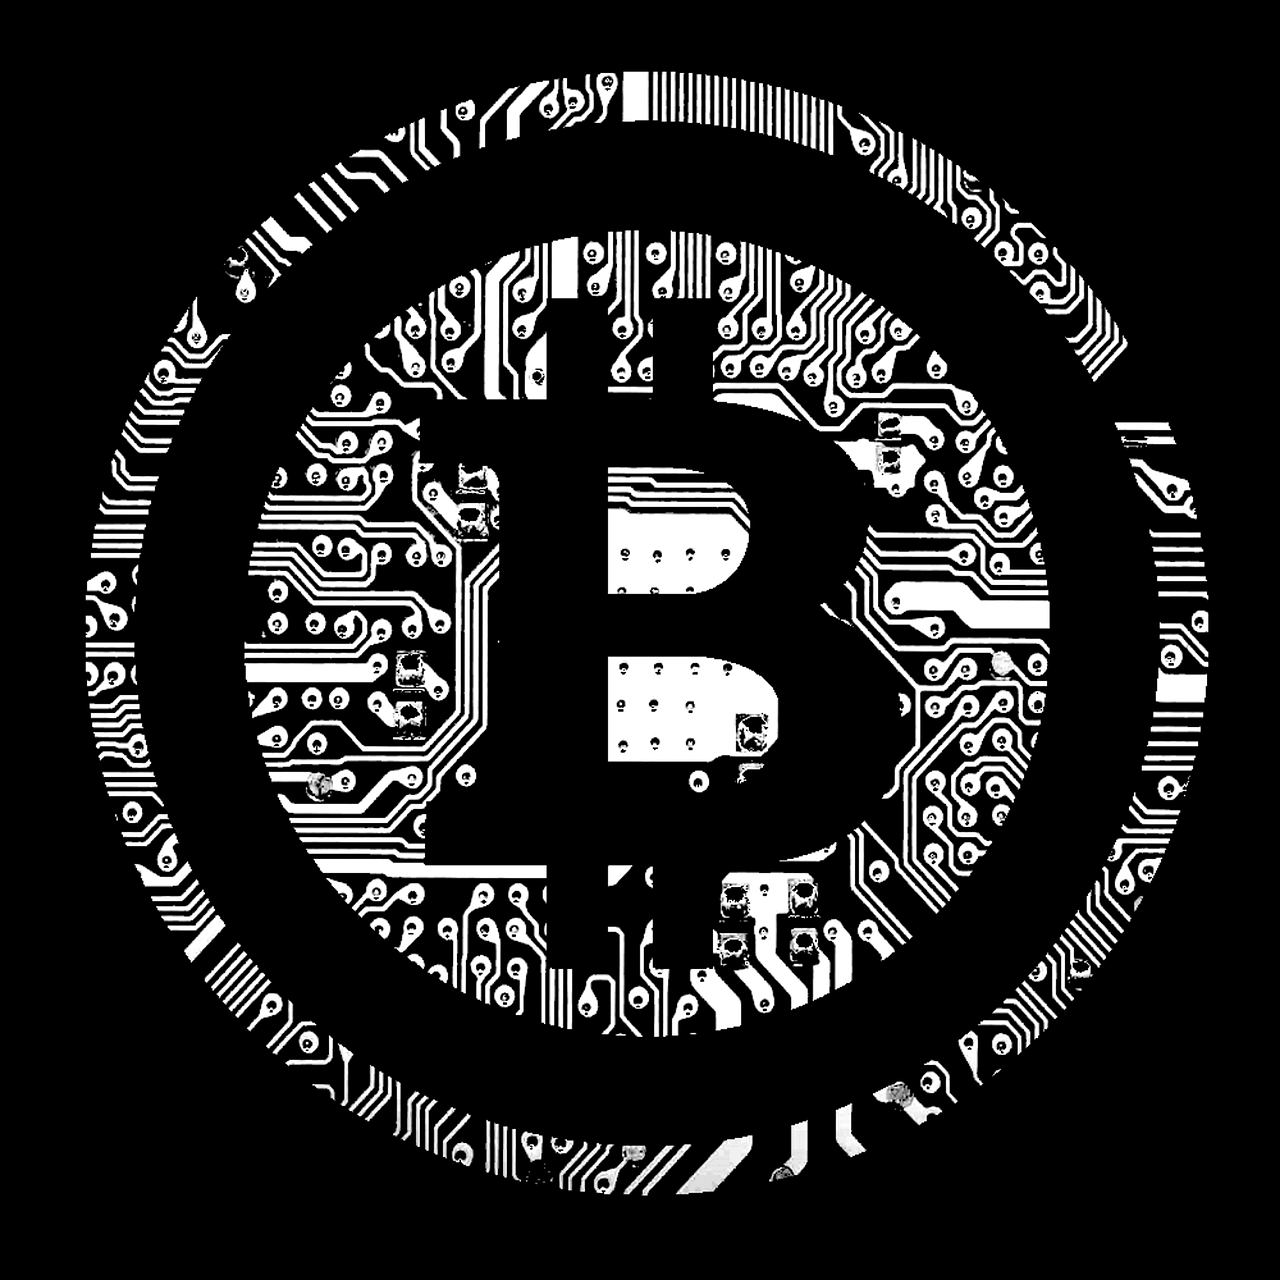 bitcoin btc cryptography free photo